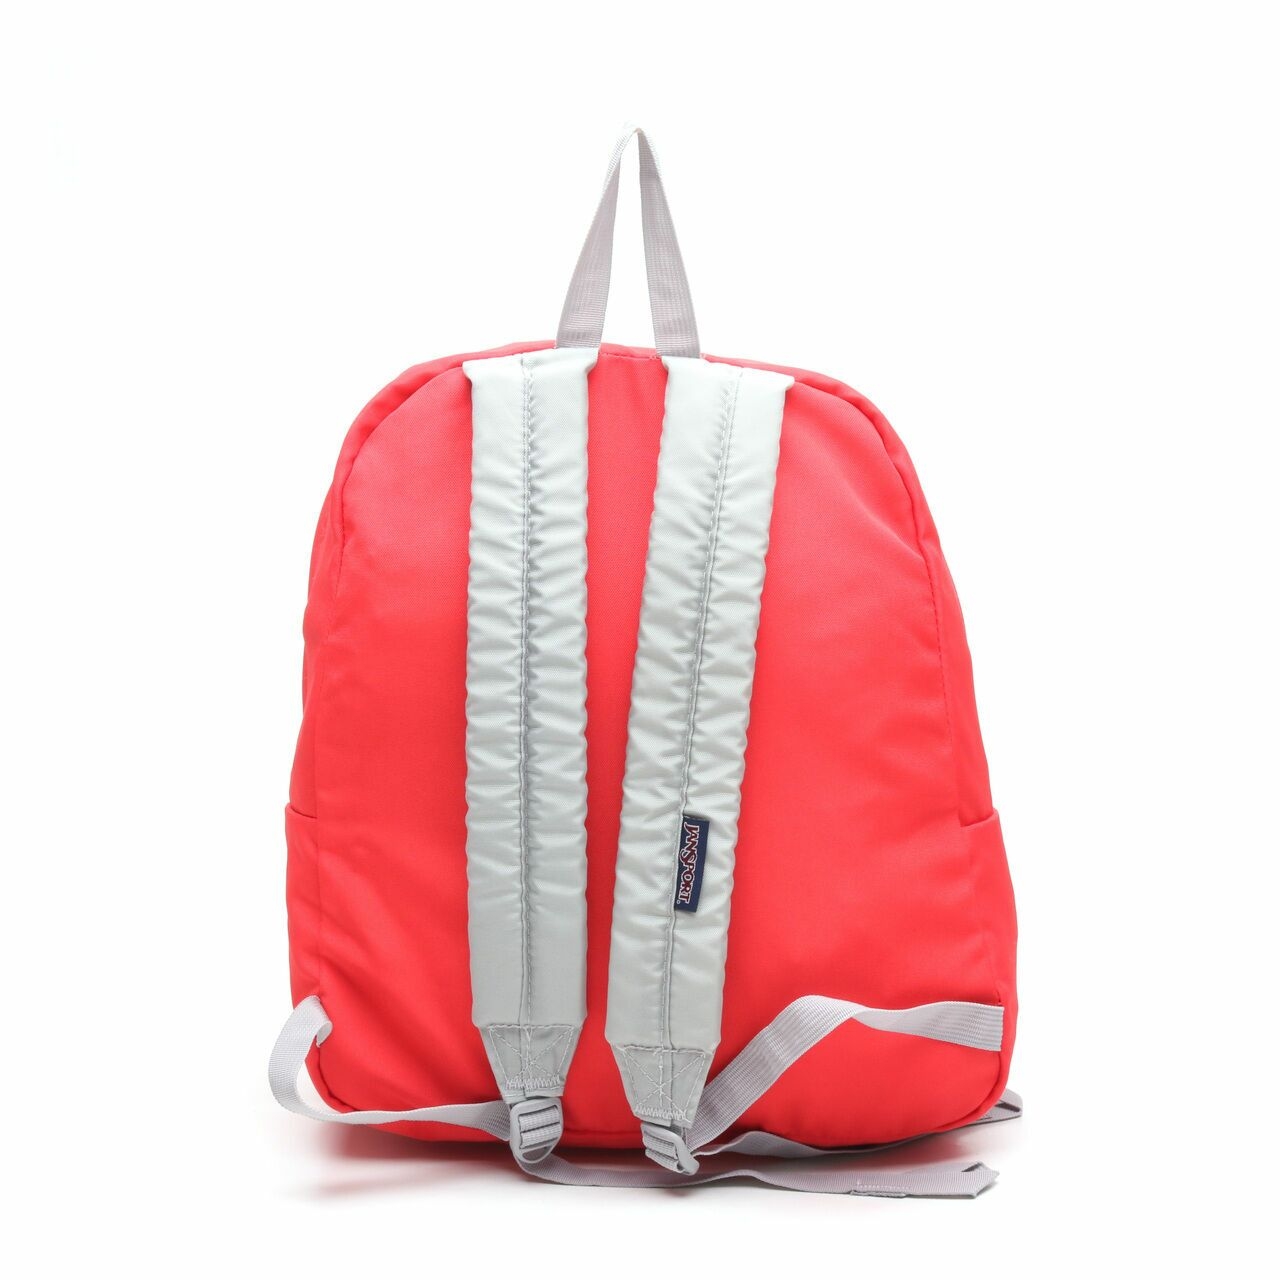 Jansport Red Backpack